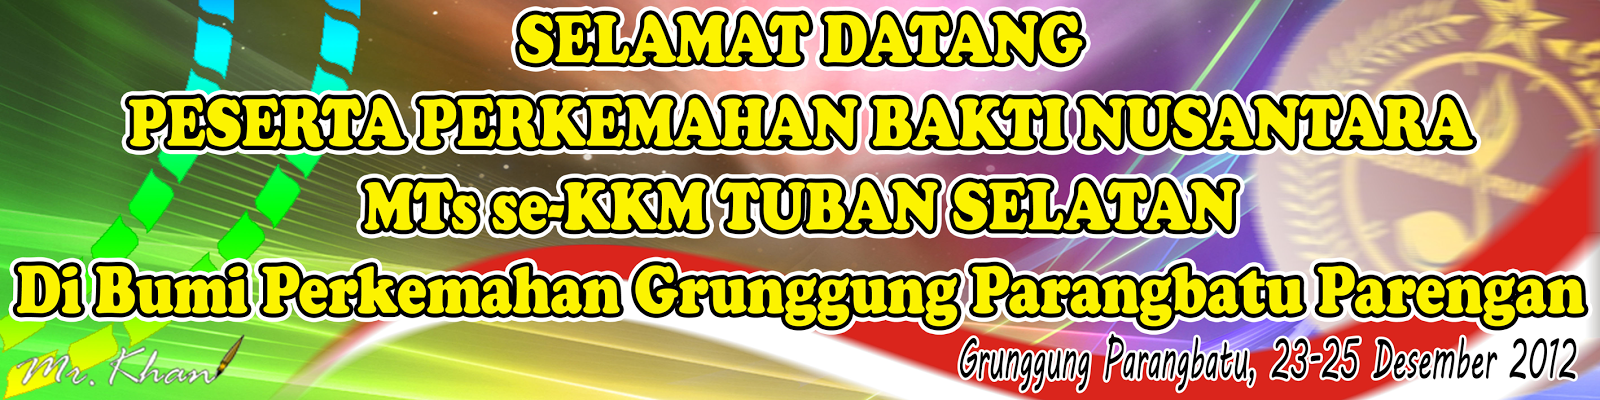 KKMTs TUSEL File Administrasi Perkemahan Bakti Nusantara